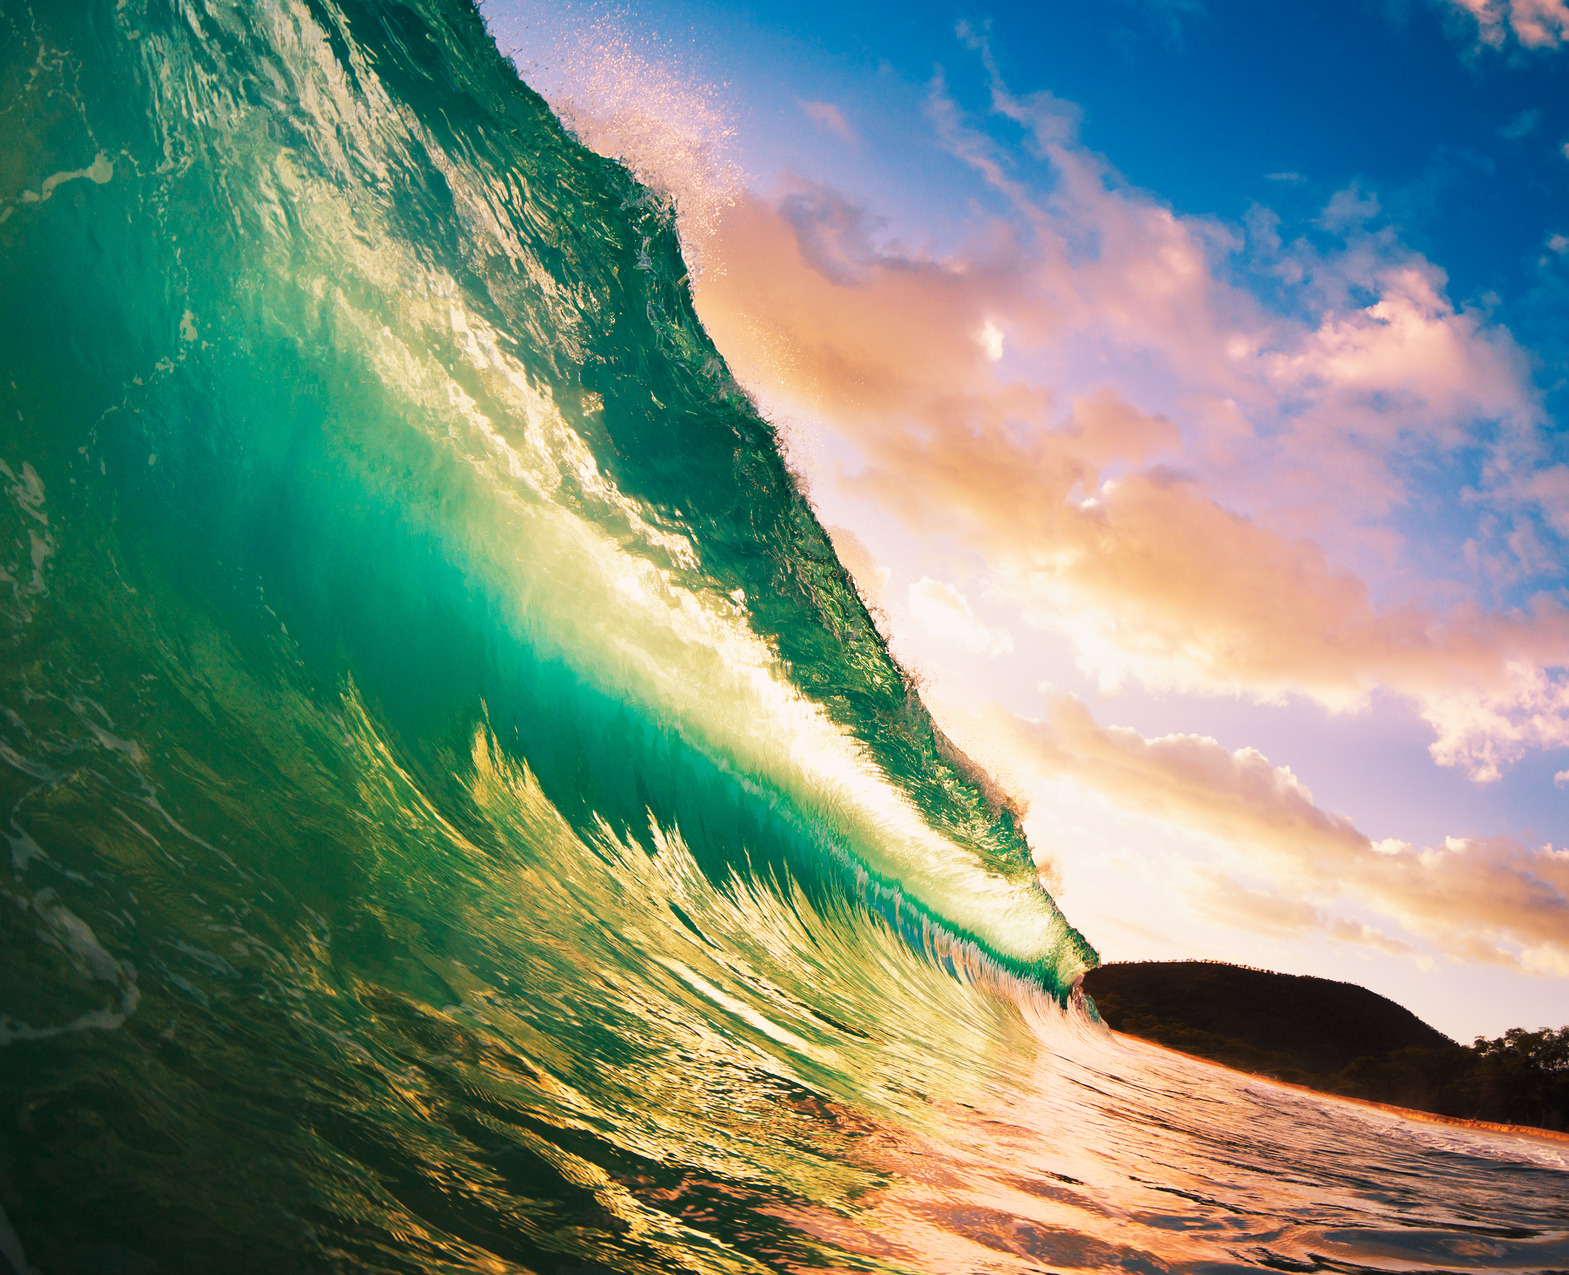 Eine lebendige Nahaufnahme einer großen, durchscheinenden grünen Welle, die sich vor einem Sonnenuntergangshimmel kräuselt, wobei das Sonnenlicht durch die Welle fällt und ihre Texturen und Farben hervorhebt, während die entfernte Küstenlinie in weichem Fokus erscheint